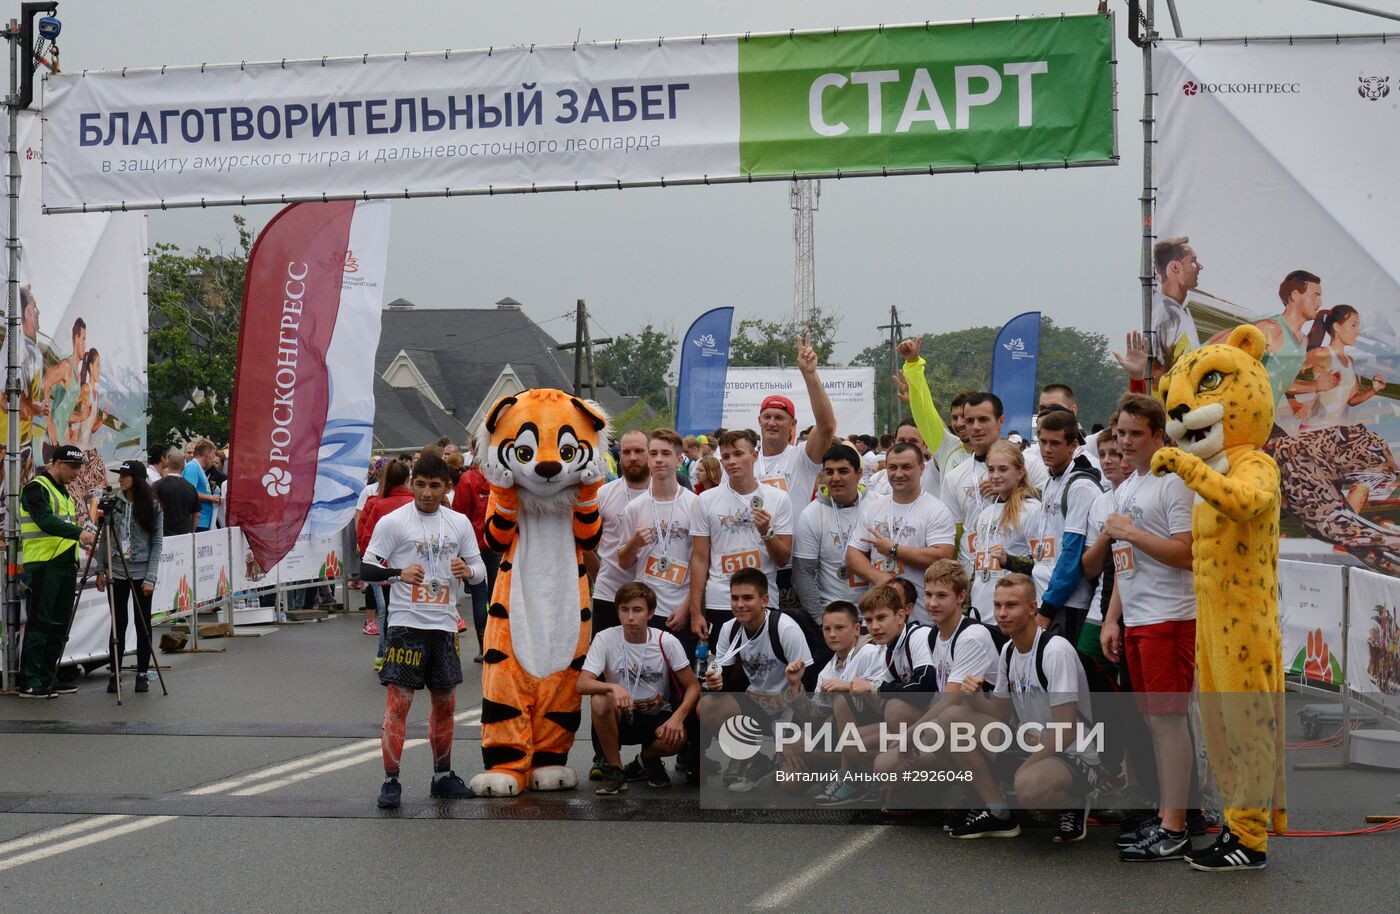 Благотворительный забег в защиту амурского тигра и дальневосточного леопарда во Владивостоке